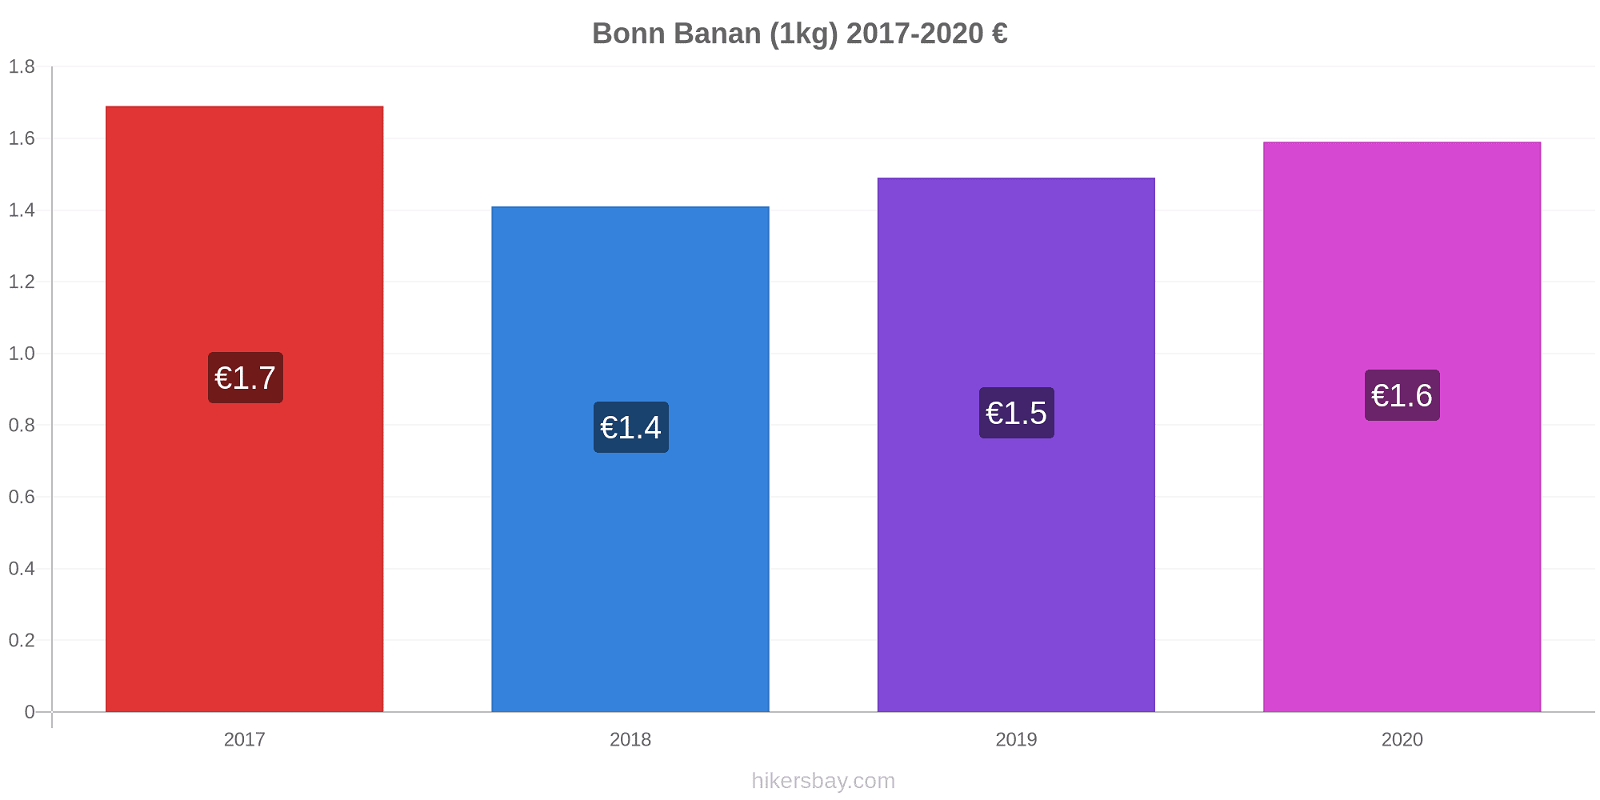 Bonn prisændringer Banan (1kg) hikersbay.com